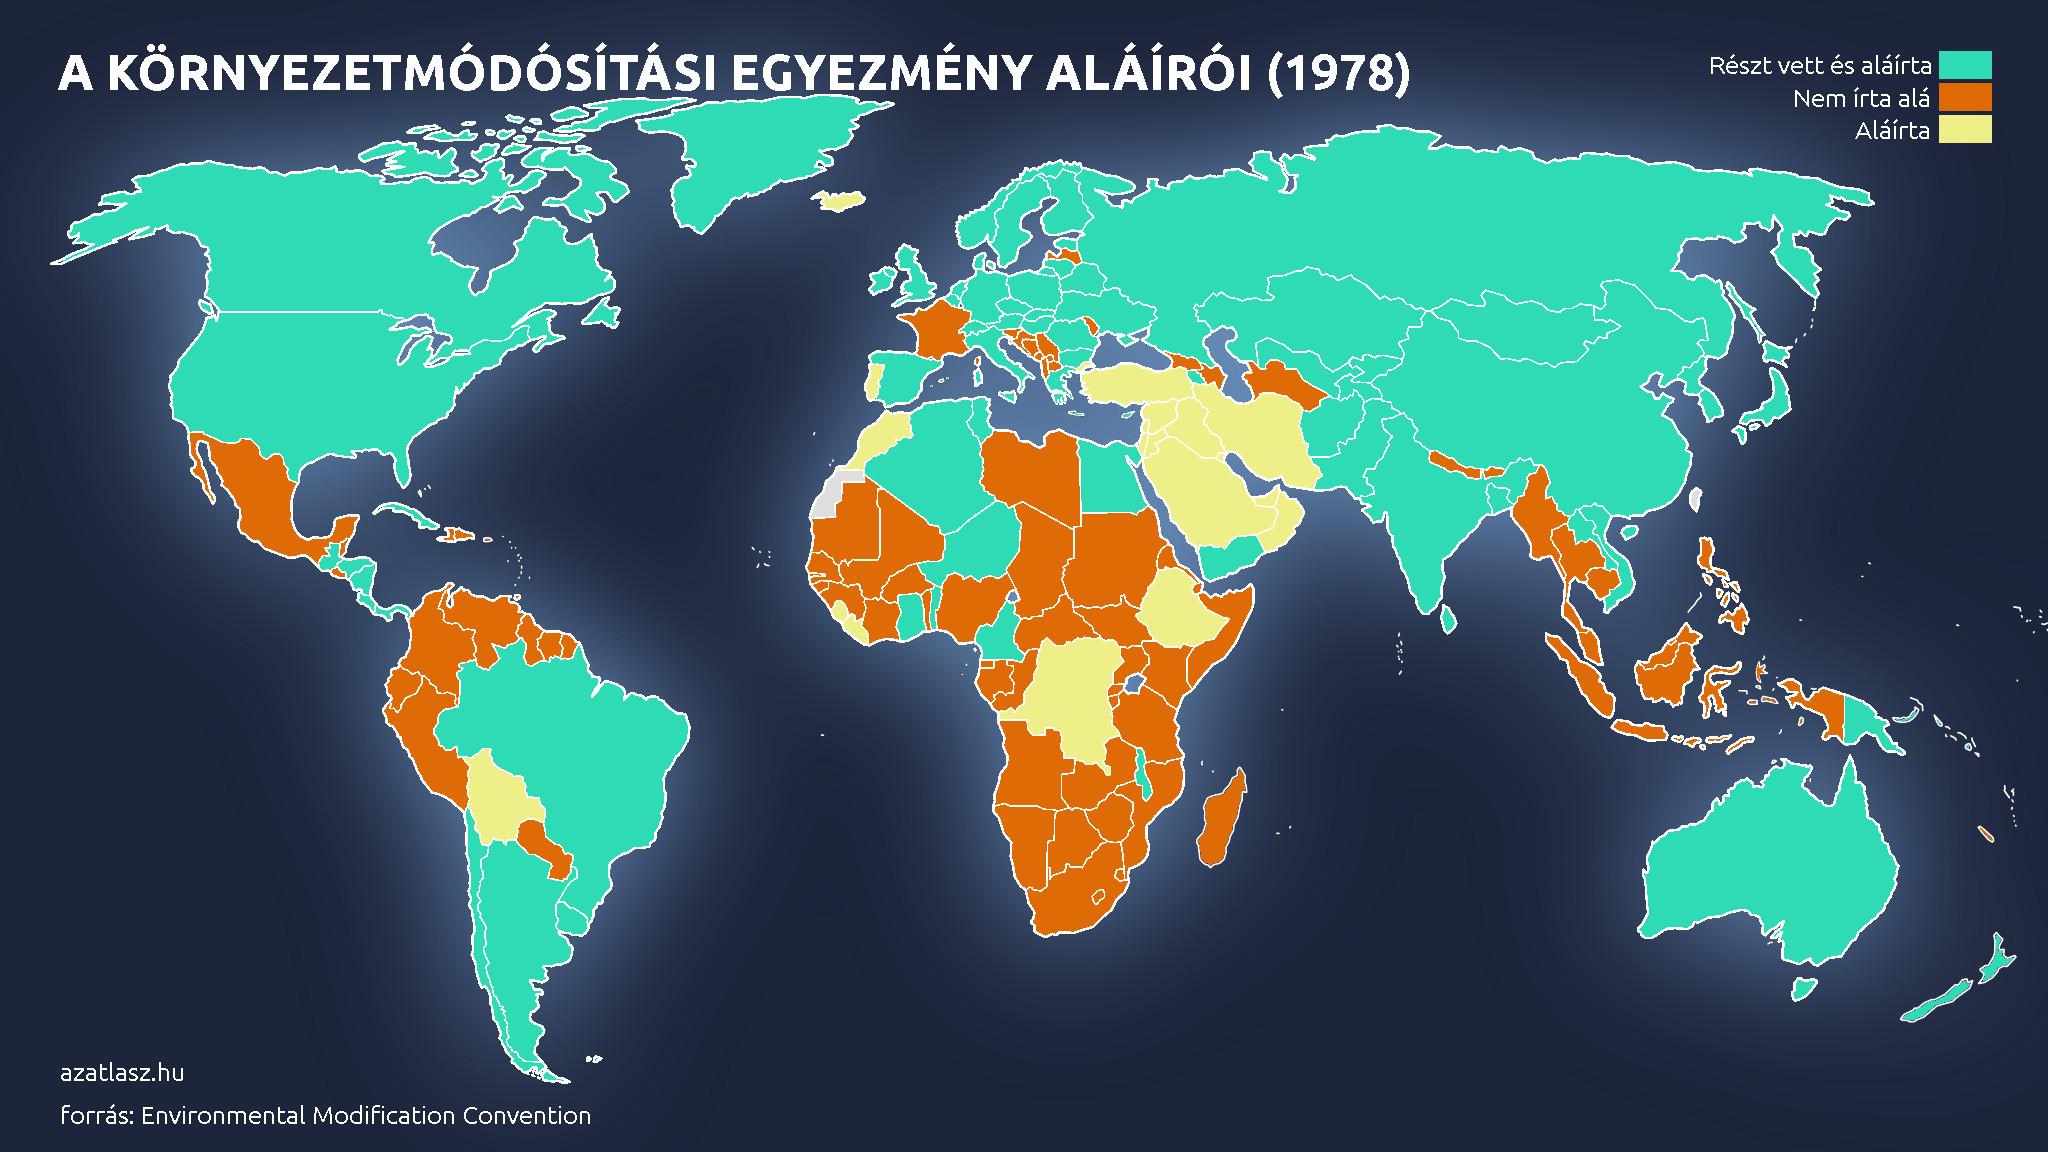 föld országai tékrép 1978 ensz egyezmény környezetmódósítás